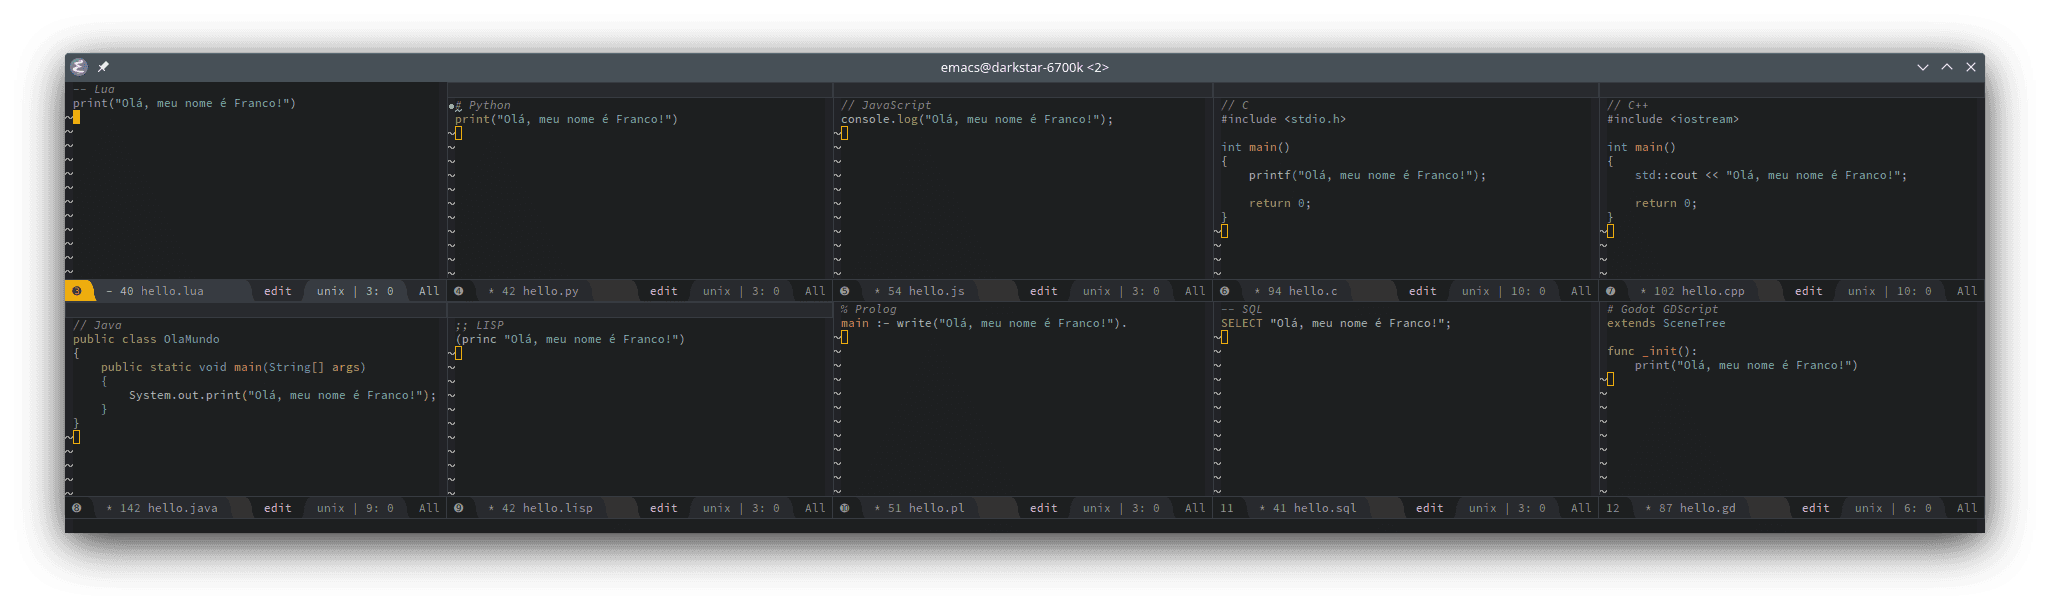 GNU Emacs com código-fonte para o programa `Hello, world!` (`Olá, mundo!`), com `Olá, meu nome é Franco!` escrito em dez linguagens de programação: Lua, Python, JavaScript, C, C++, Java, LISP, Prolog, SQL e GDScript.